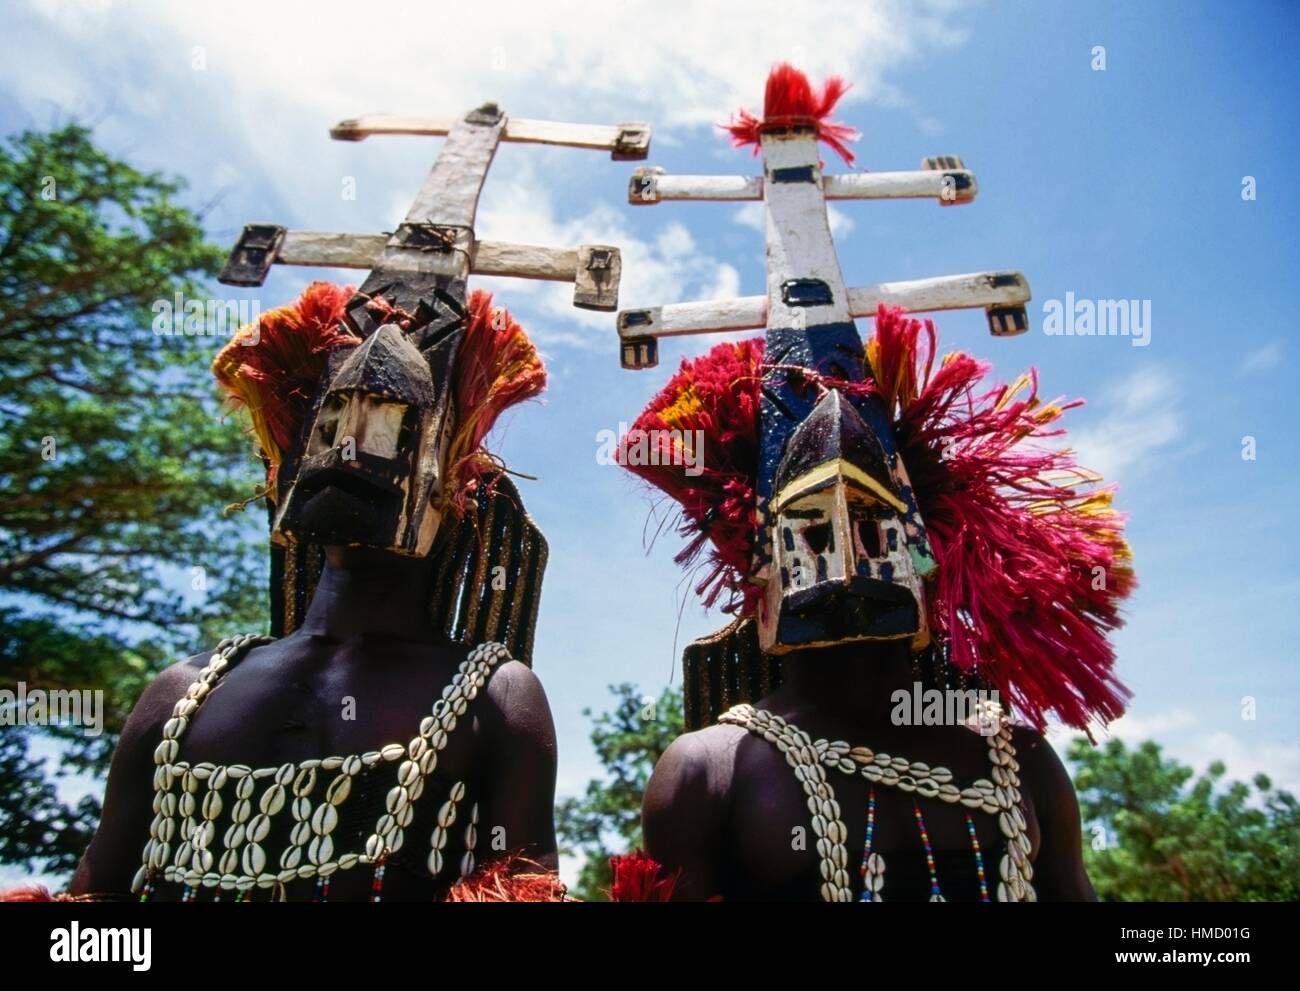 Les danseurs Dogon, l'un d'entre eux sur des échasses, portant des masques Kanaga effectuant la Dama ou la danse funéraire masqués, Bandiagara, Banque D'Images